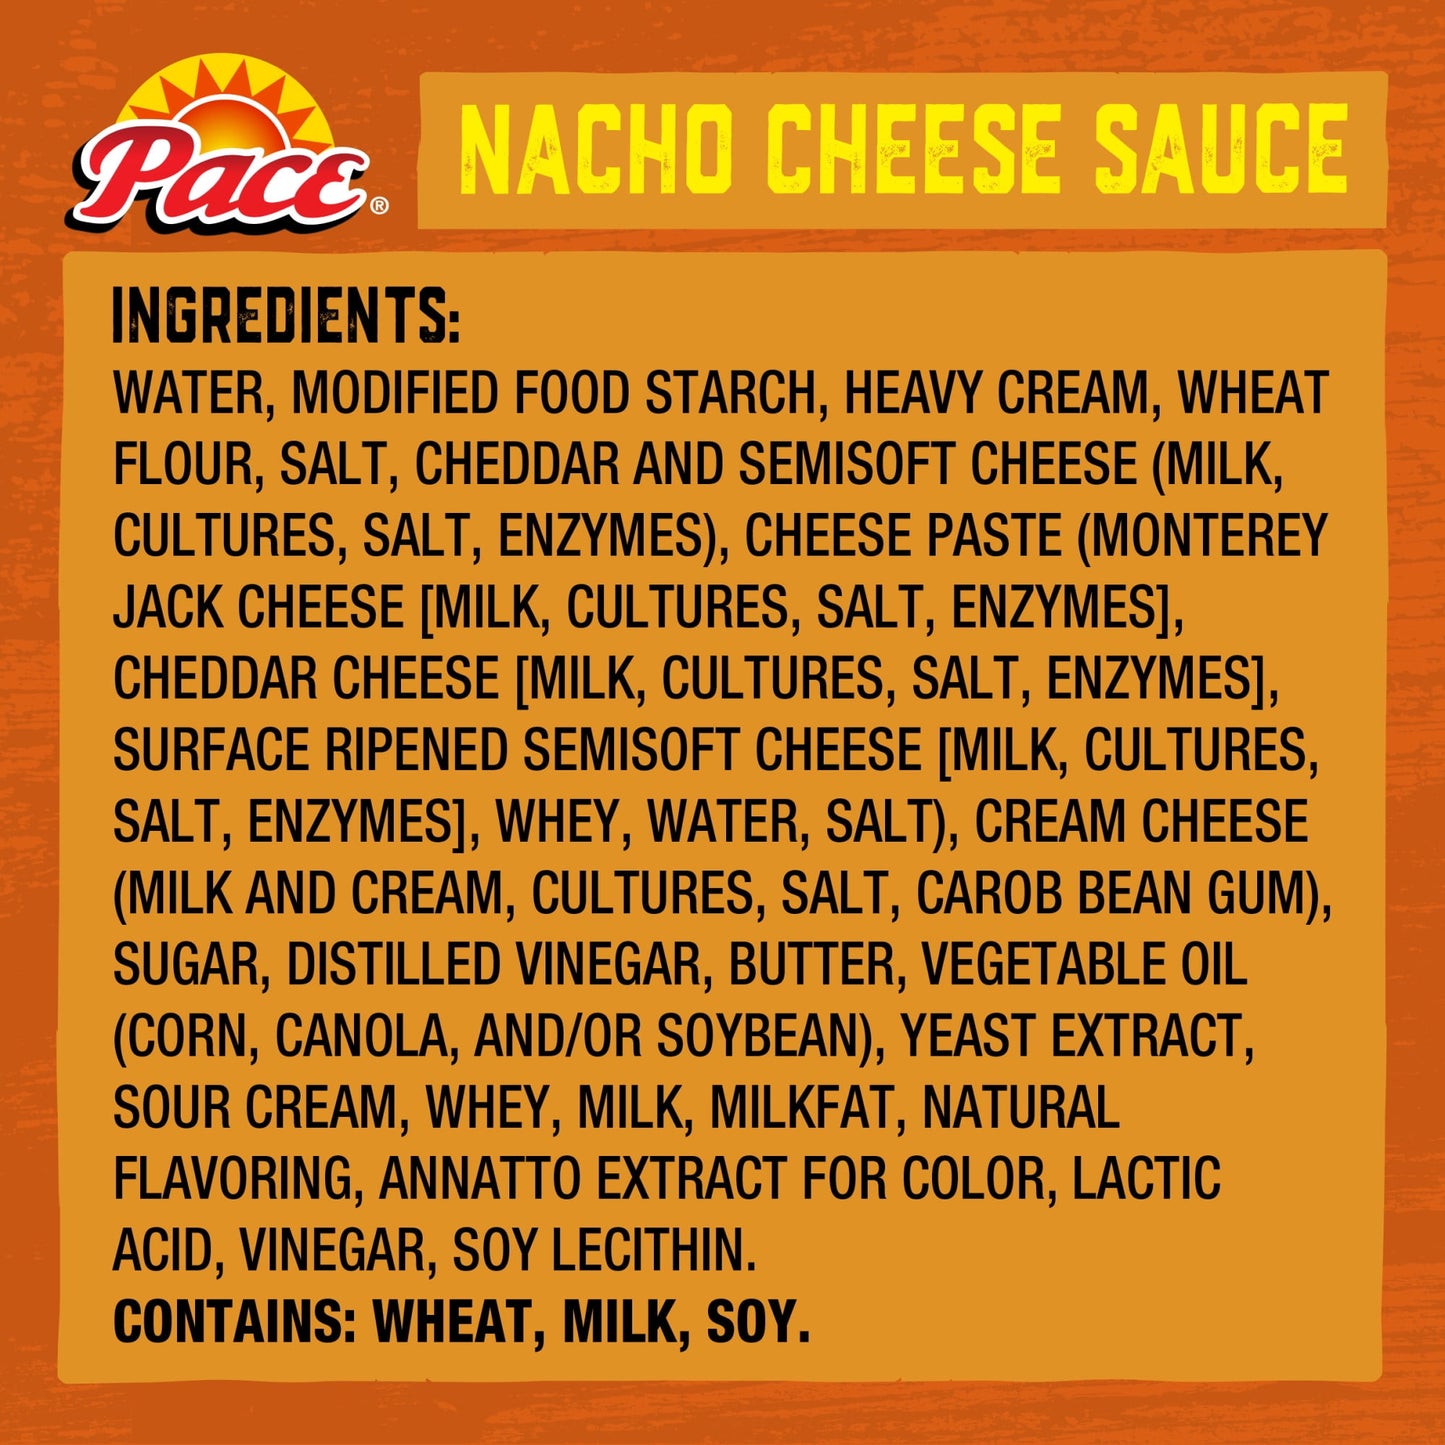 Pace Medium Nacho Cheese Sauce, 10.5 oz Can